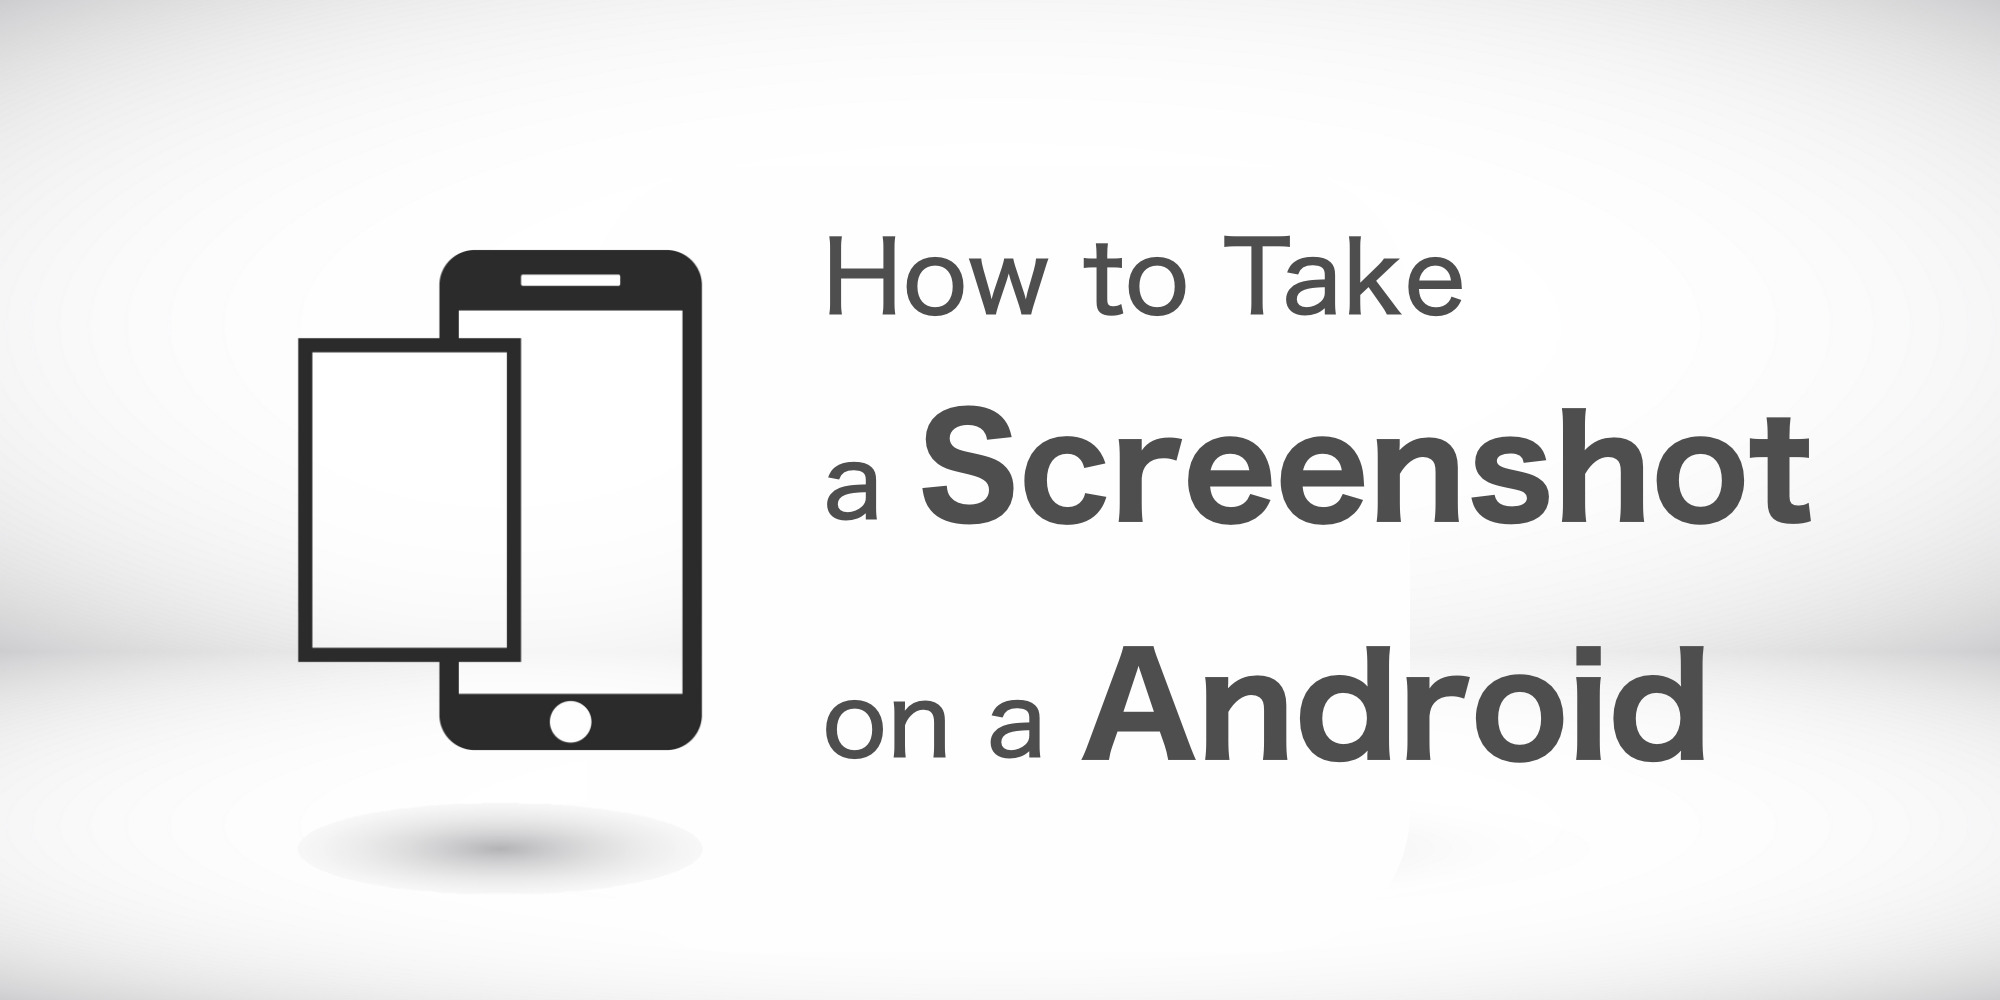 Androidでスクリーンショットを撮影する方法 保存先も にこスマ通信